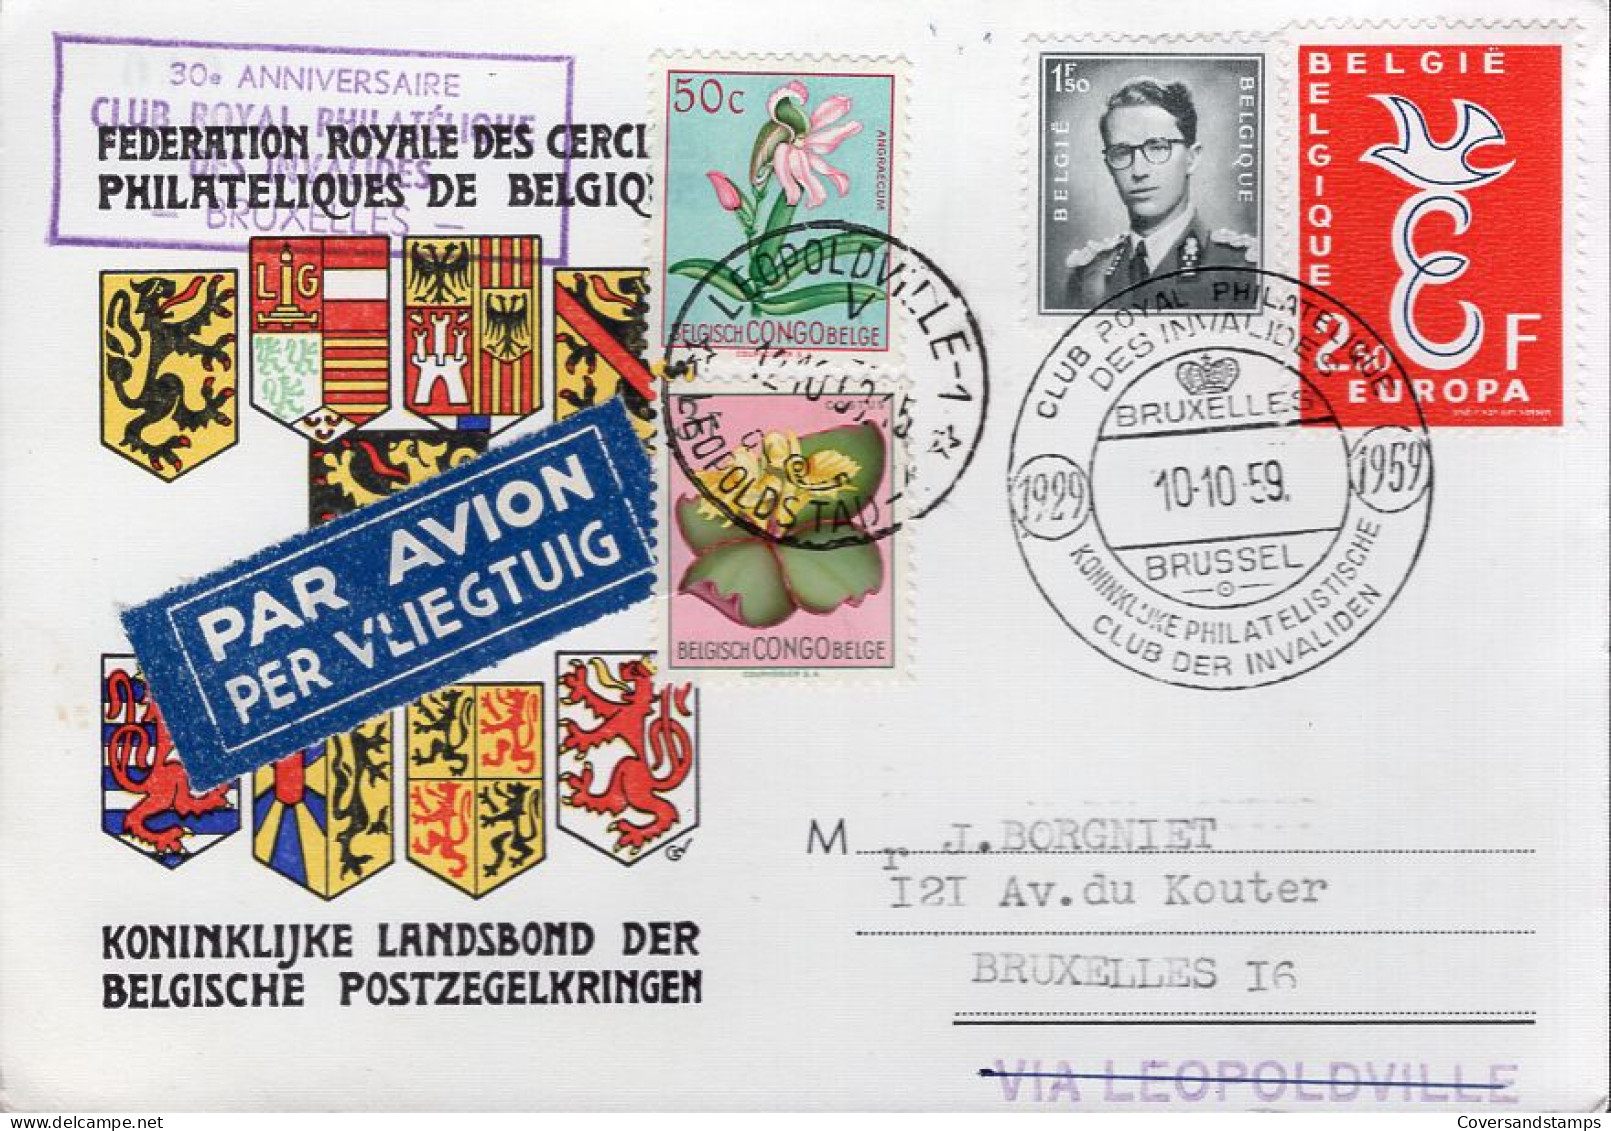  Briefkaart: 30e Anniversaire Club Royal Philatélique Des Invalides - Lettres & Documents